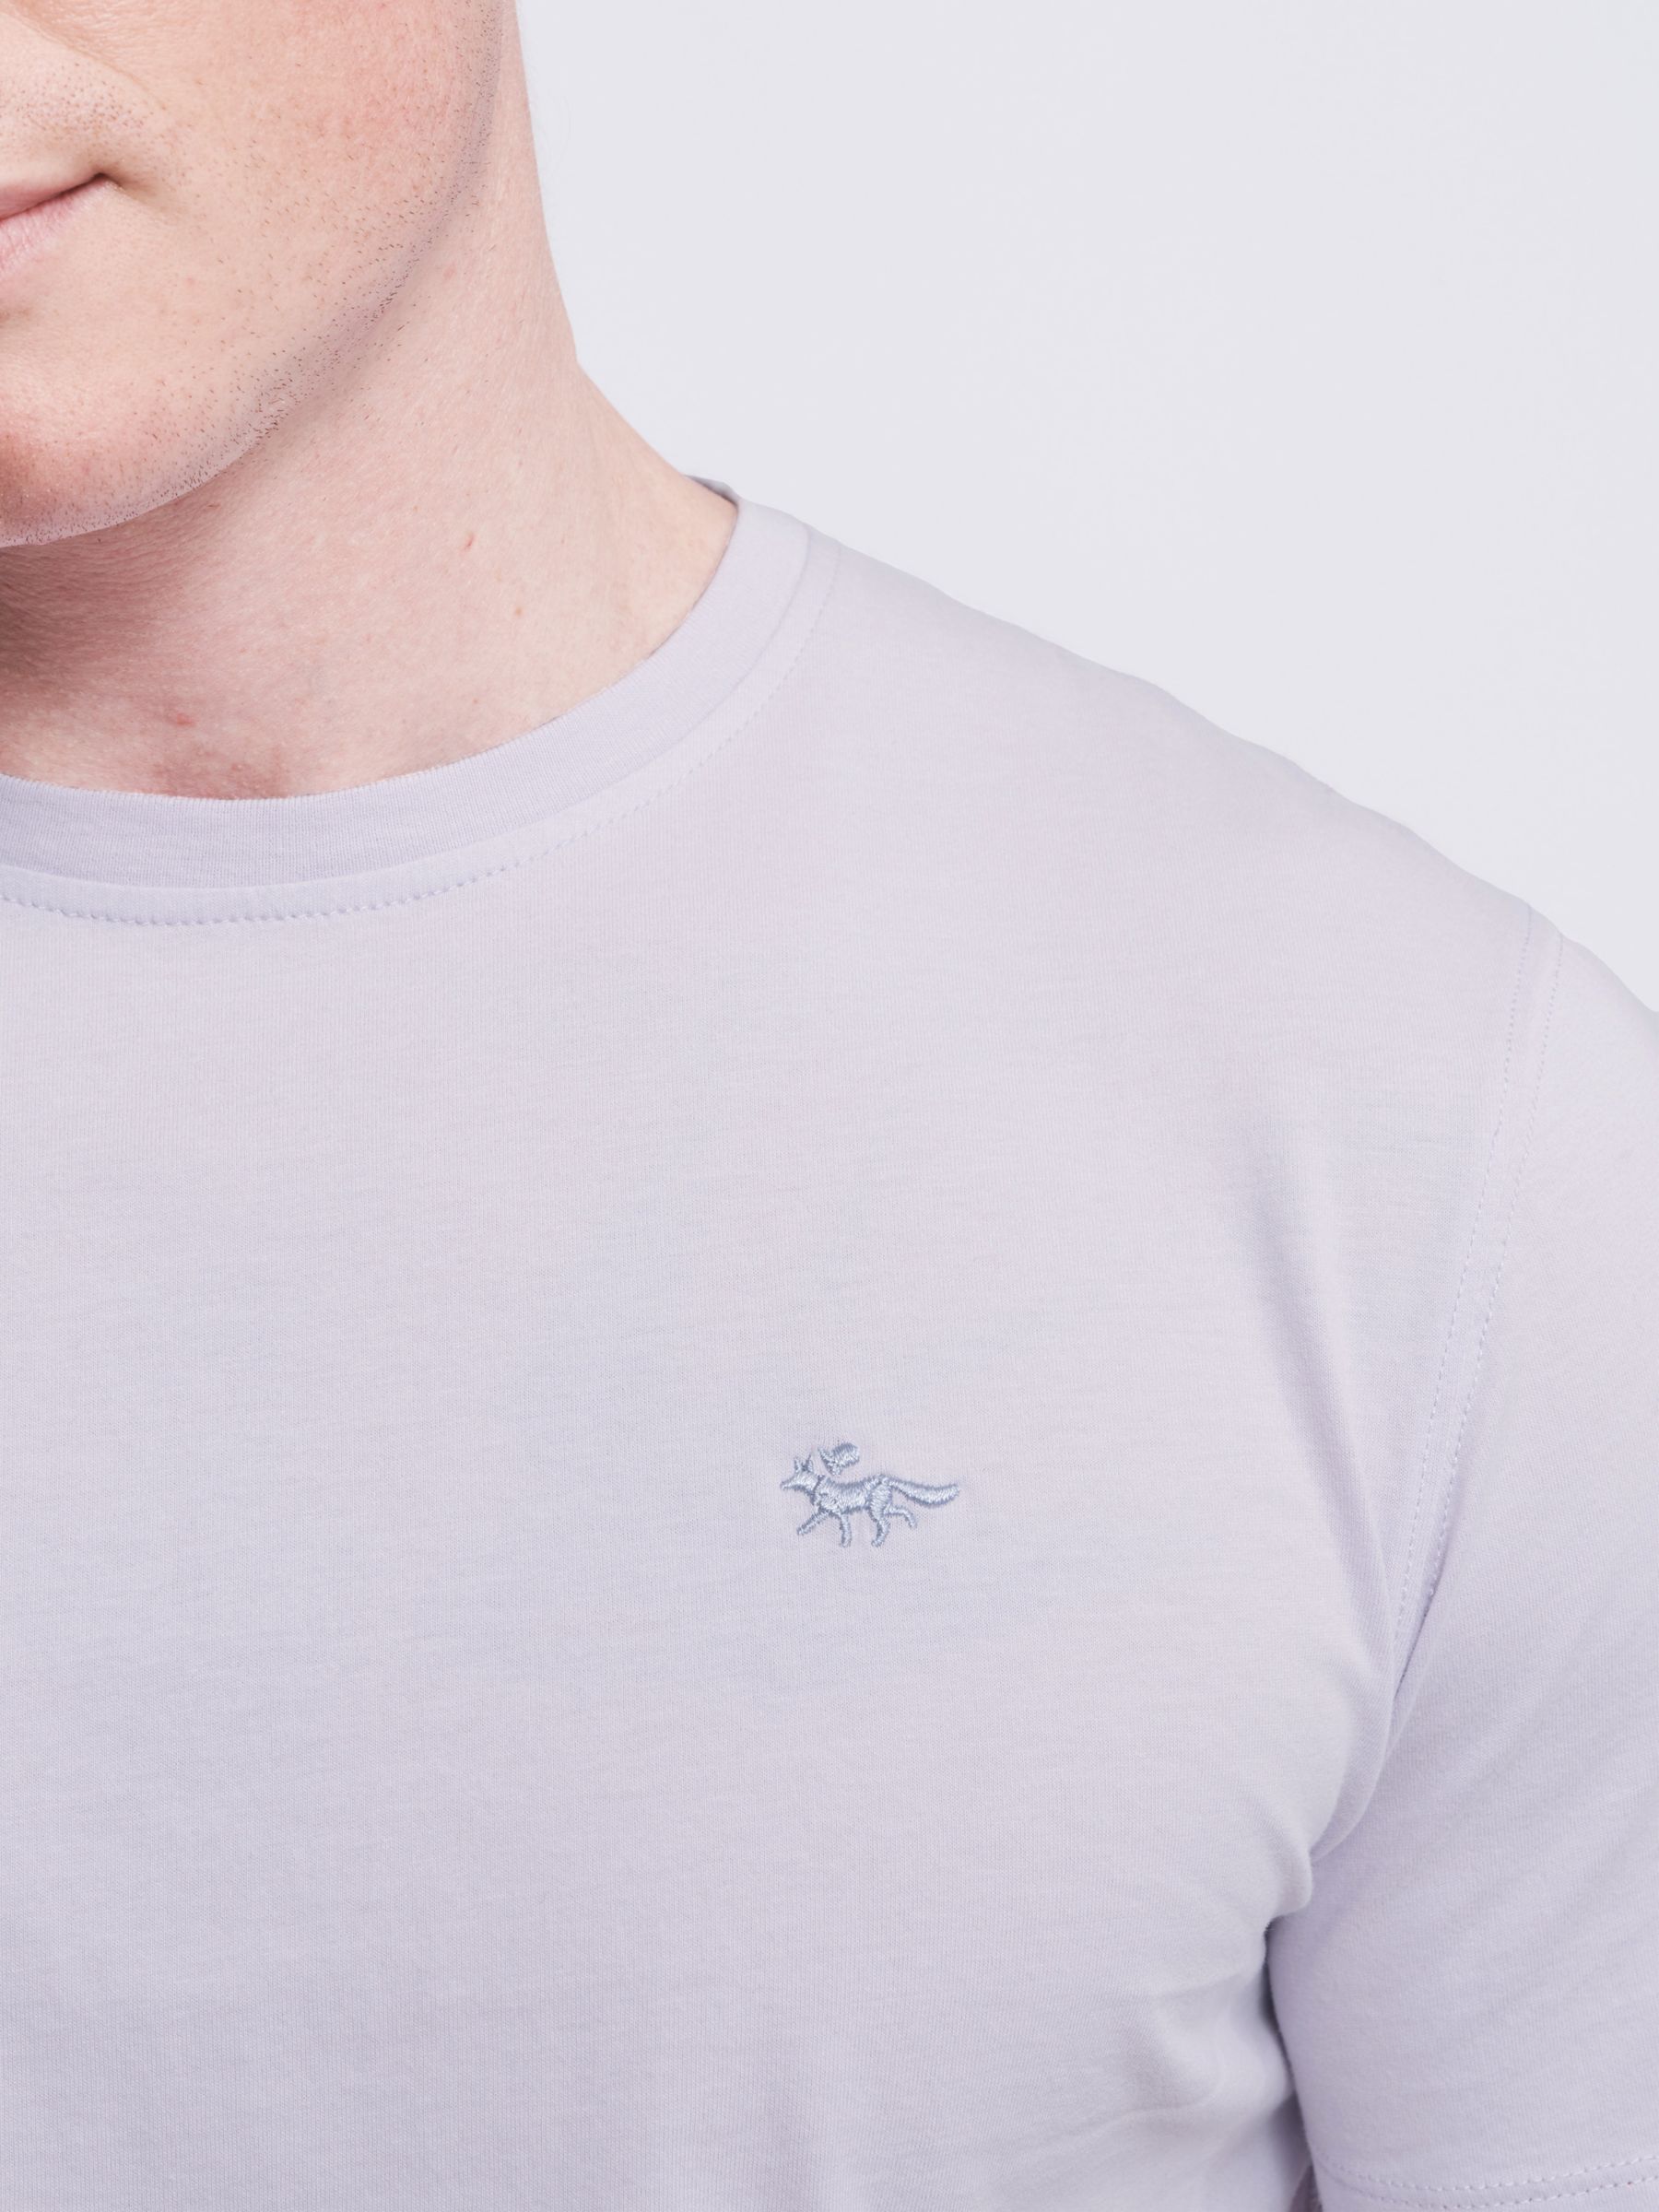 Aubin Logo Cotton T-shirt, Washed Lilac, XS